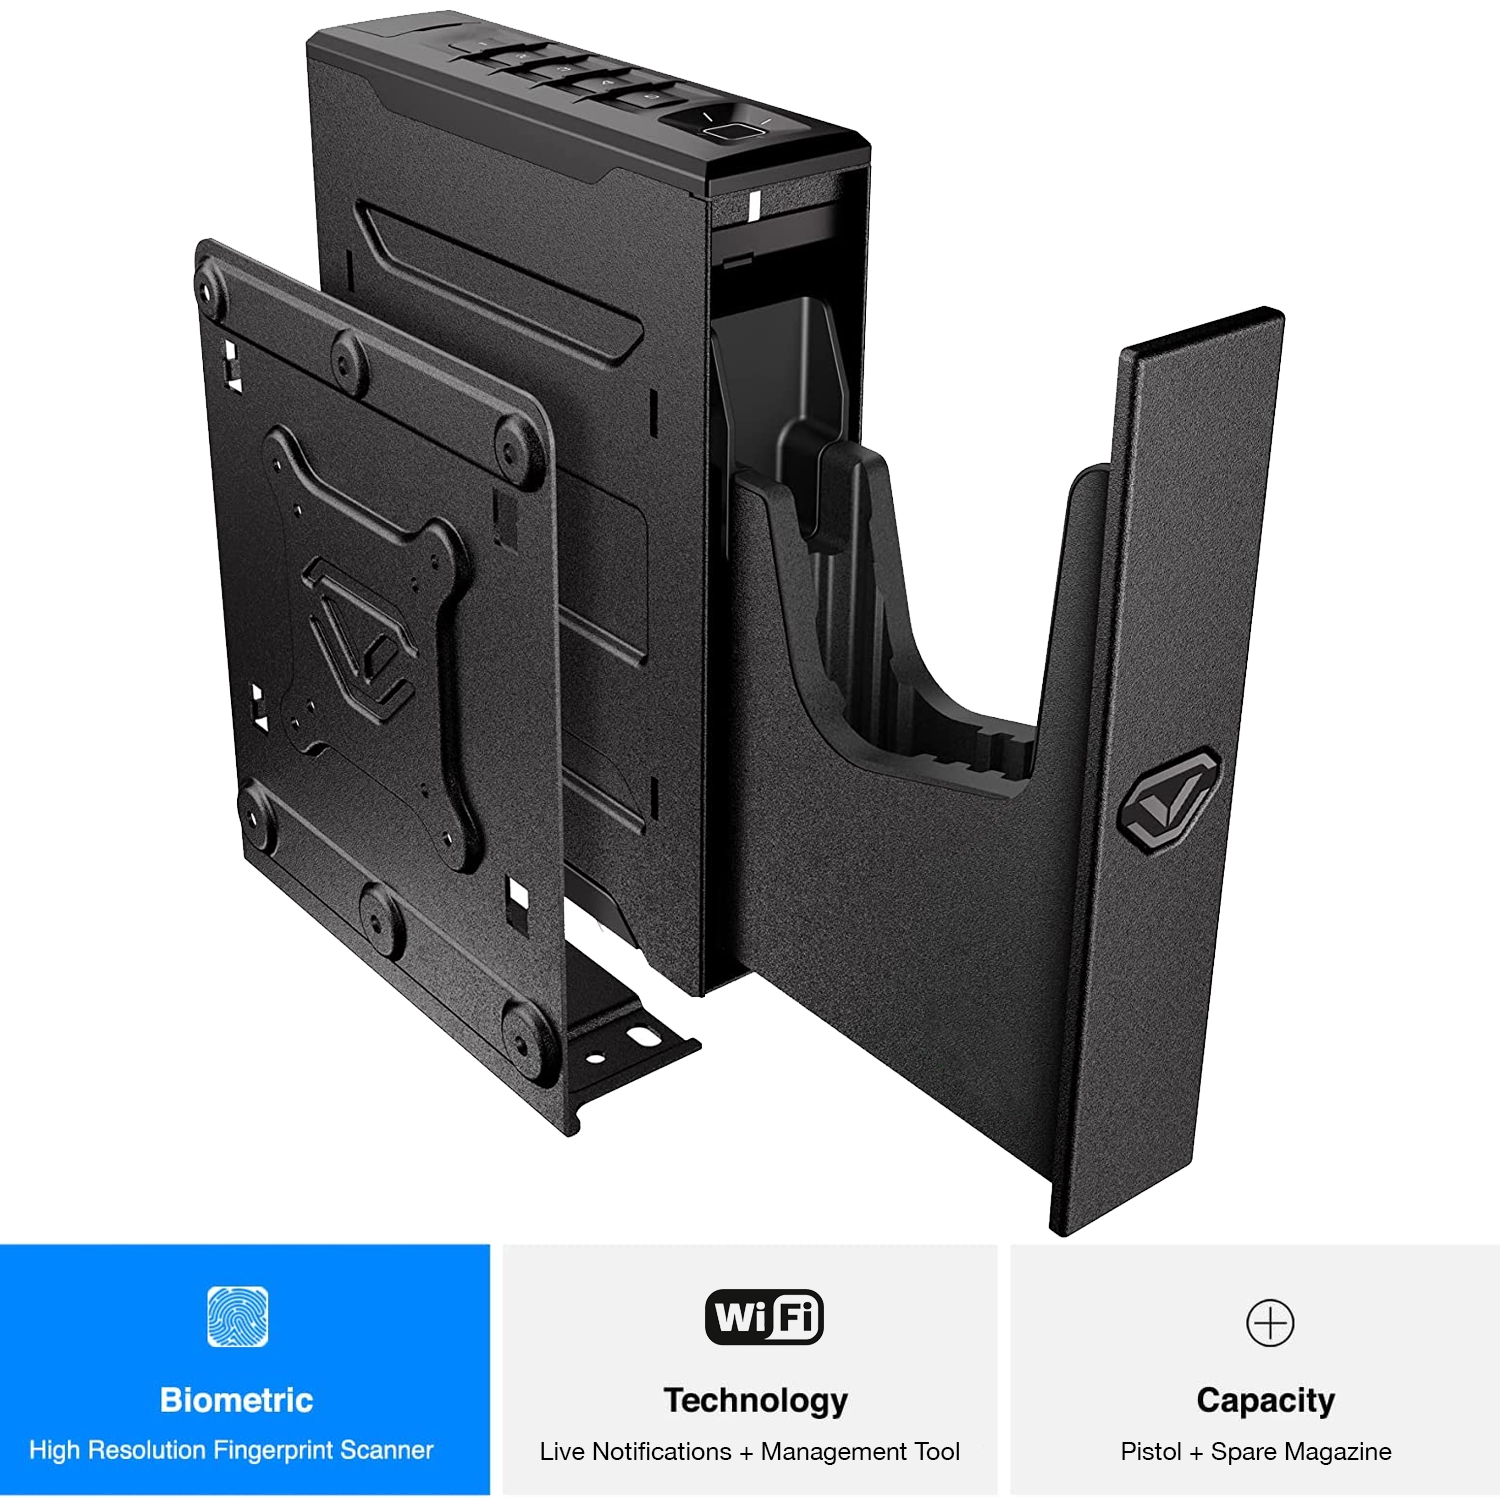 Vaultek - nsl20i quick access biometric and wifi slider gun safe - MODLOCK